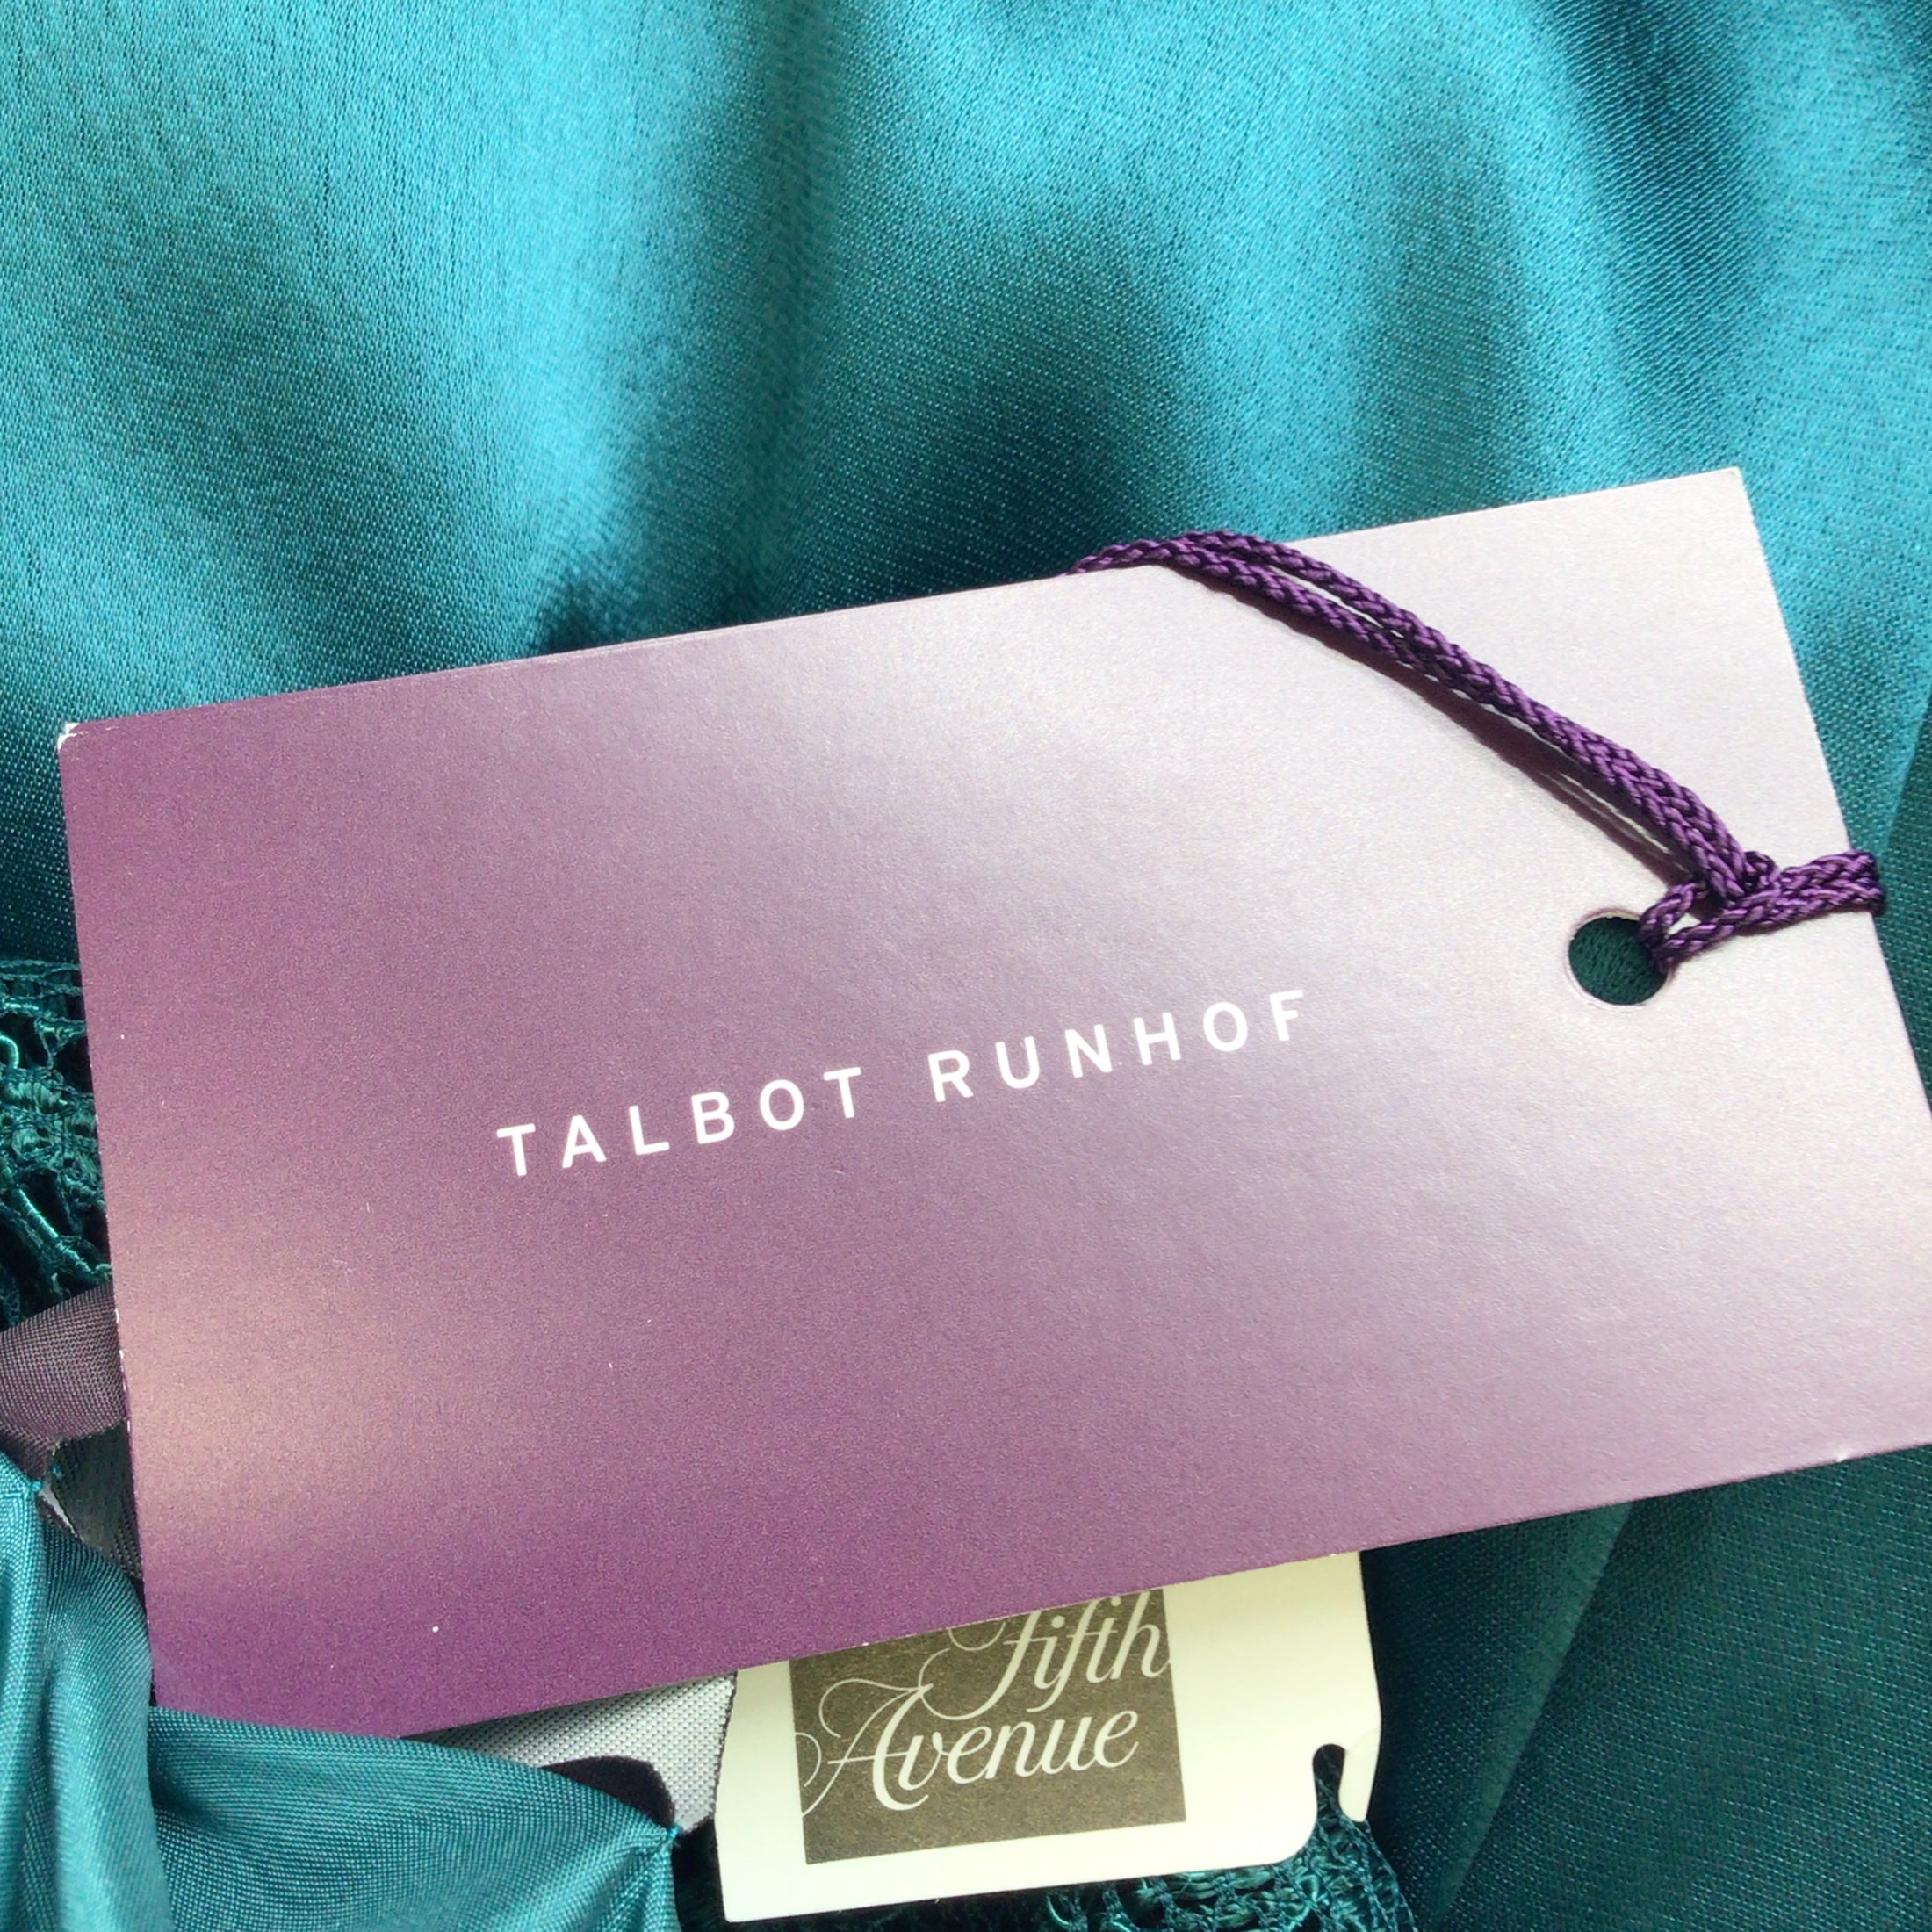 Talbot Runhof Korfu Teal Ruched Lace Detail Satin Midi Dress